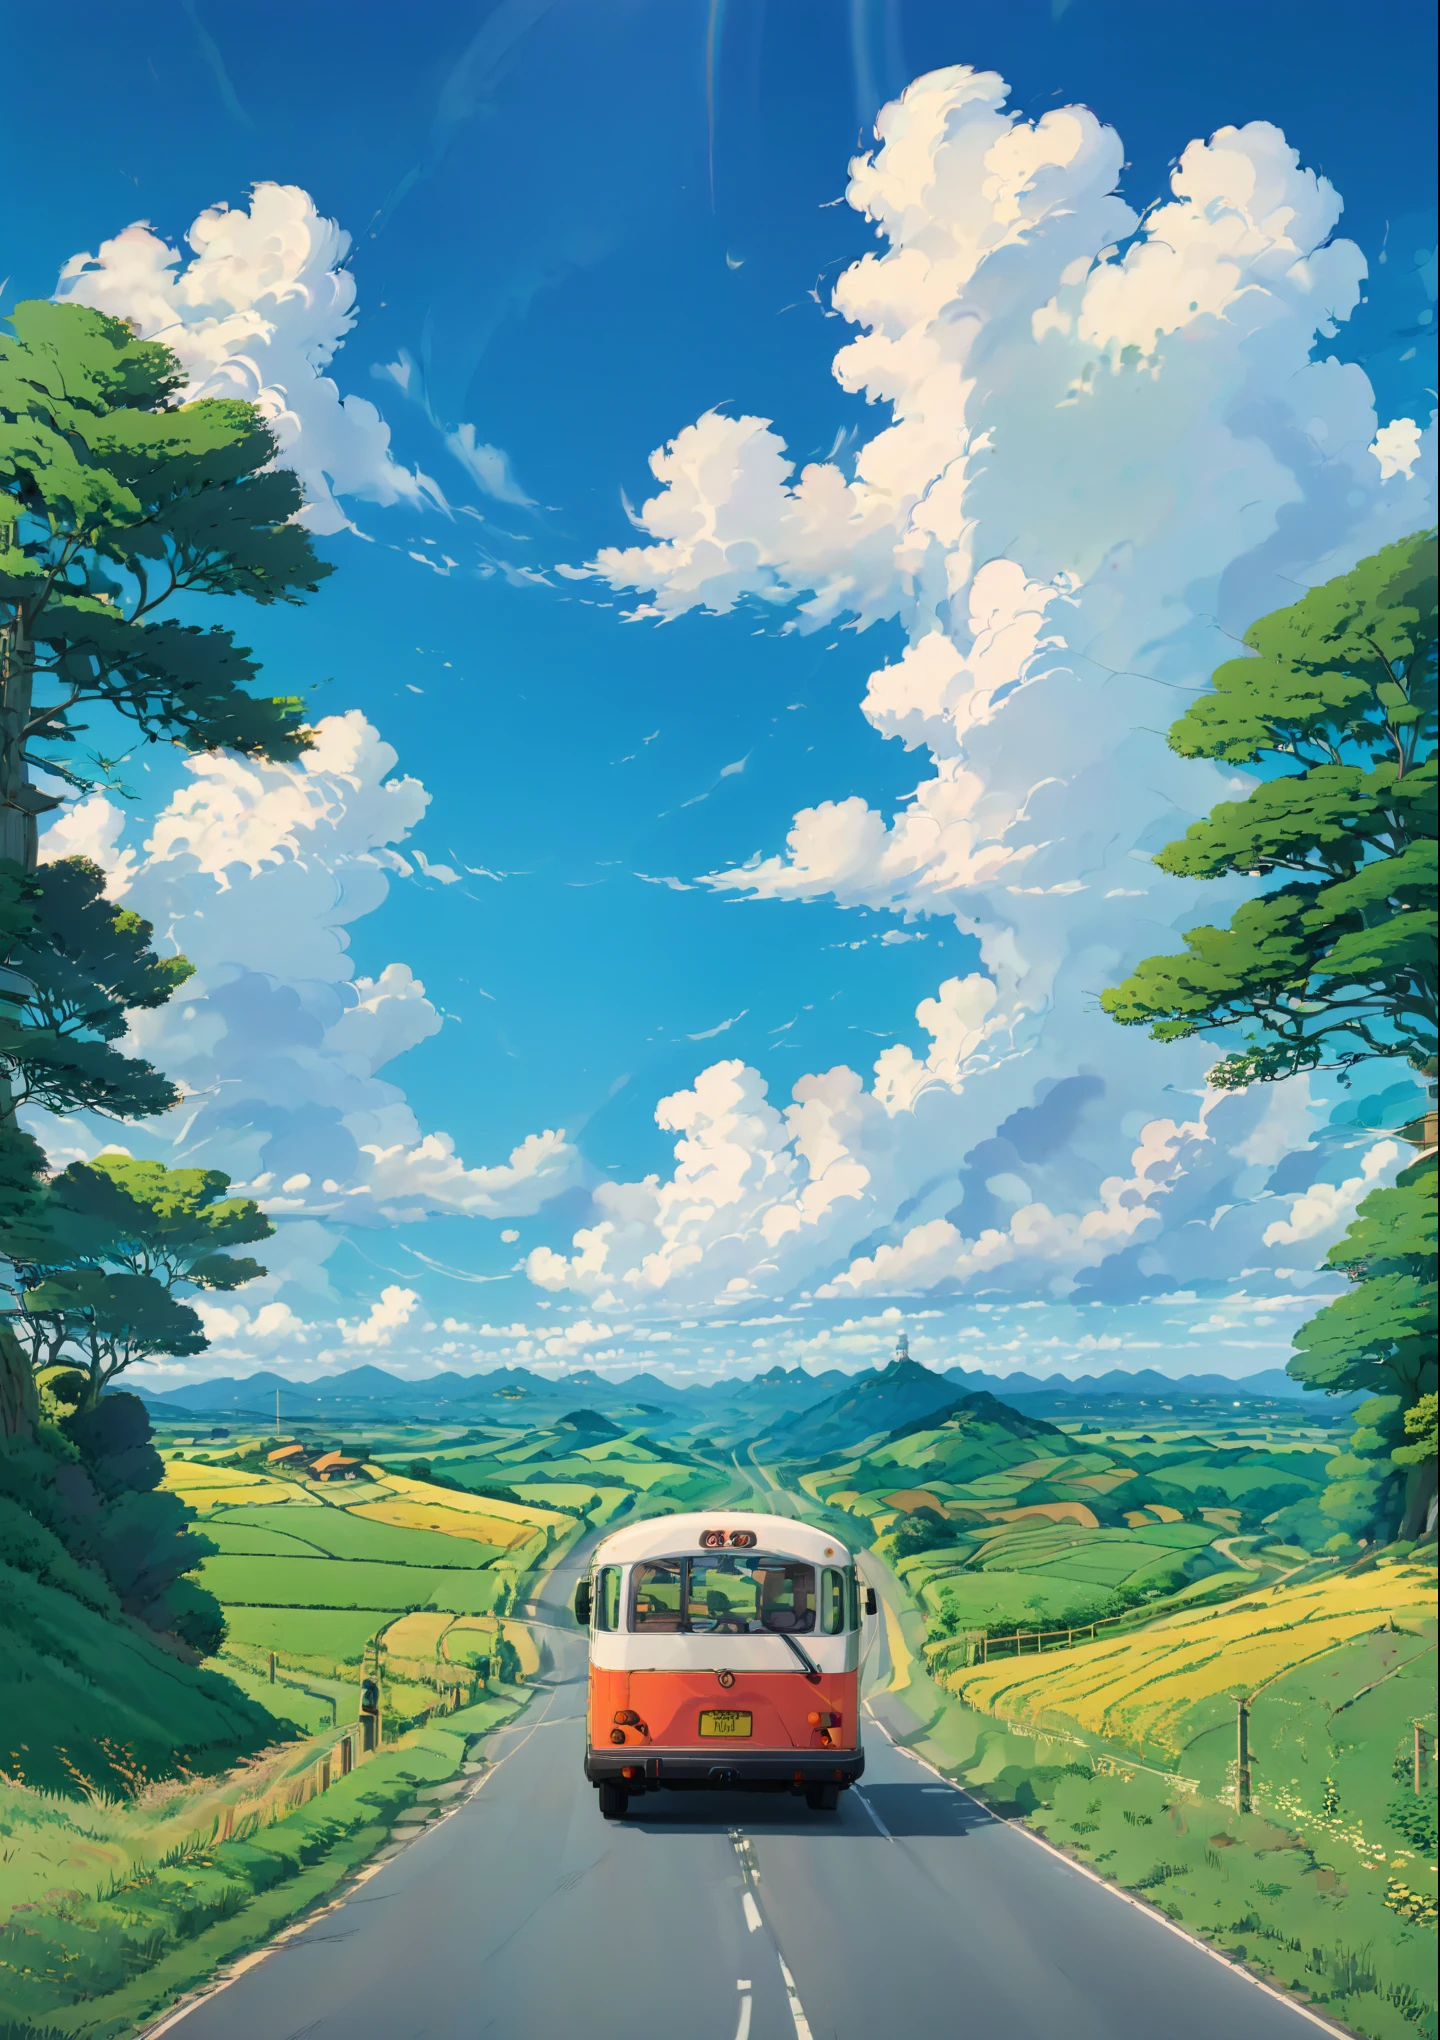 paisaje anime de un autobús conduciendo por un camino rural, por Miyazaki, paisaje de campo anime, paisaje de estudio ghibli, estudio ghibli cielo, increible miyazaki, estilo de Hayao Miyazaki, por Hayao Miyazaki, la película animada de miyazaki, estudio ghibli luz del sol, Tiro medio. por Hayao Miyazaki, arte del estudio ghibli, Ambiente Ghibli